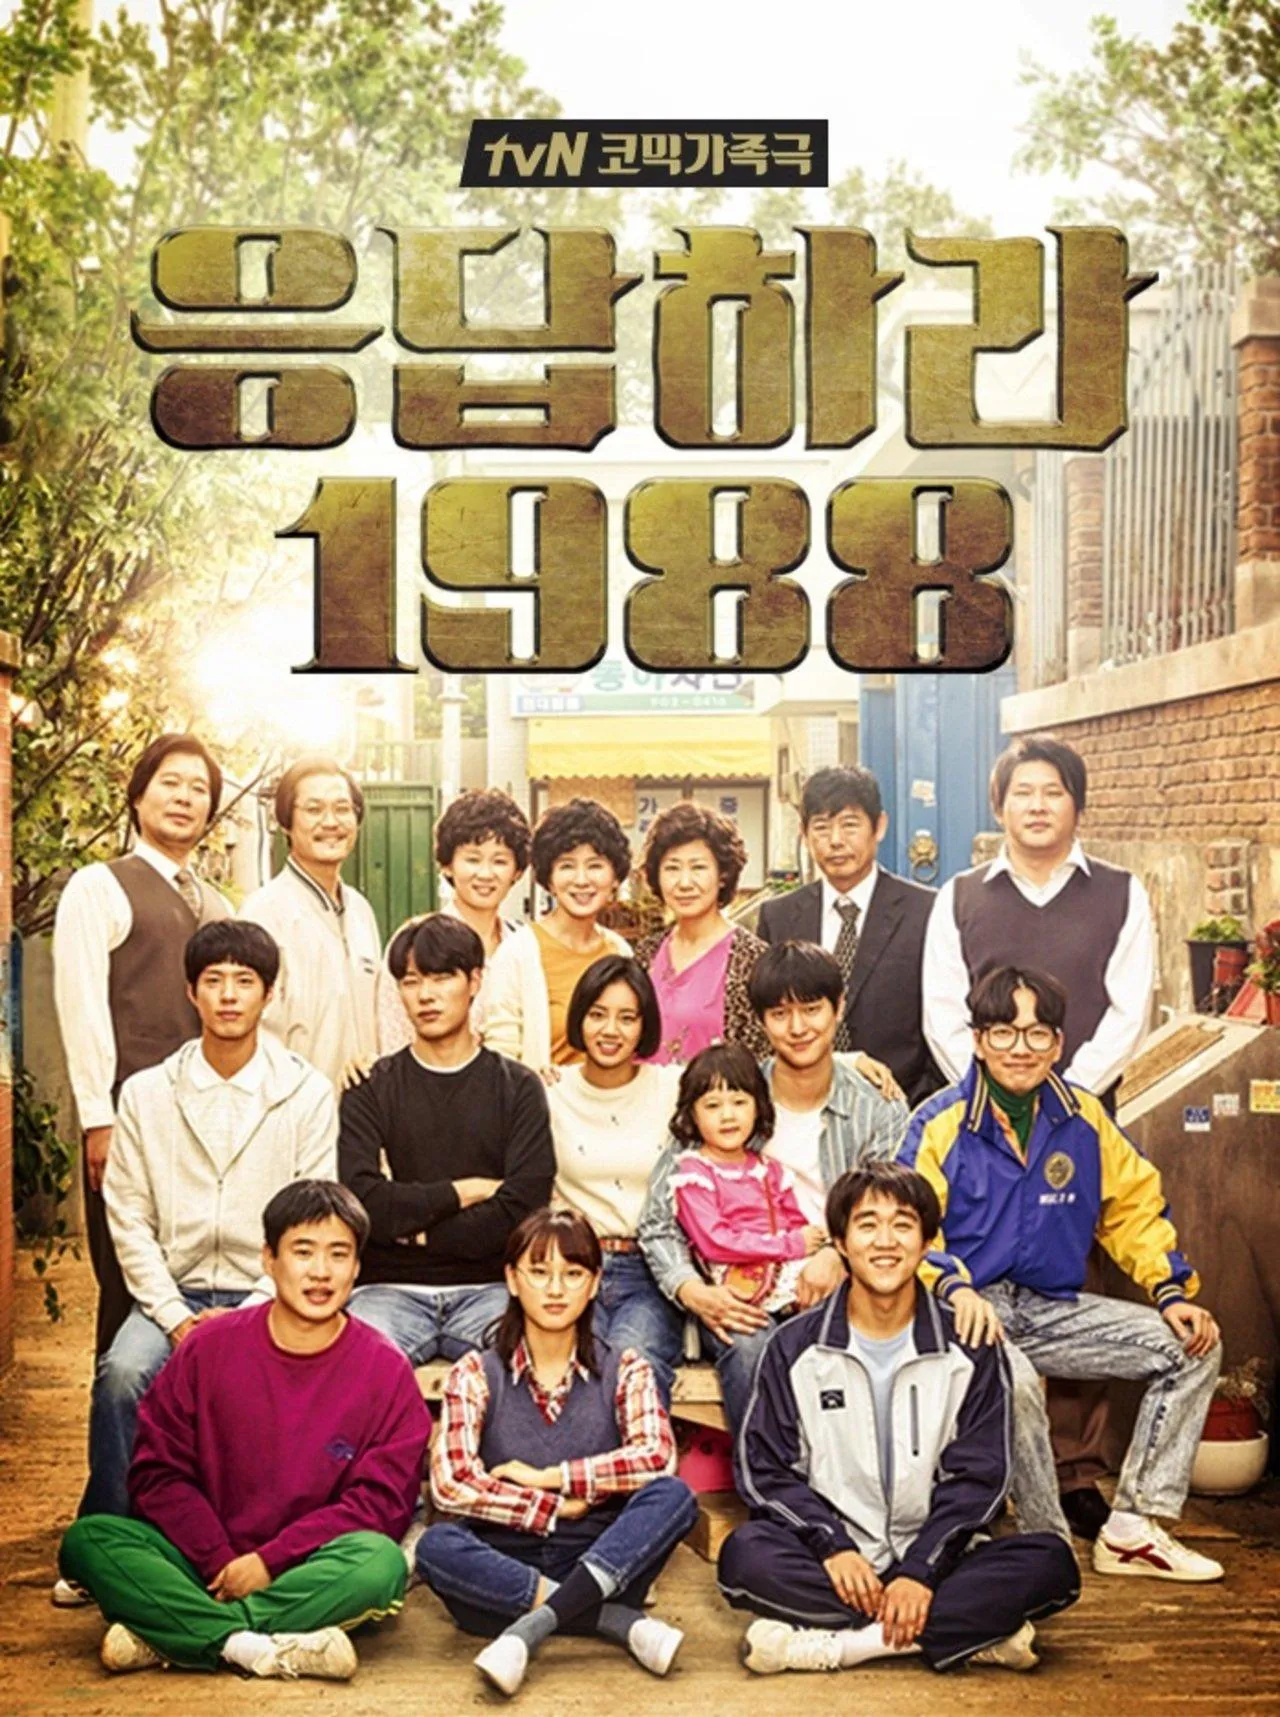 Reply 1988 bộ phim Hàn Quốc hay nhất về gia đình